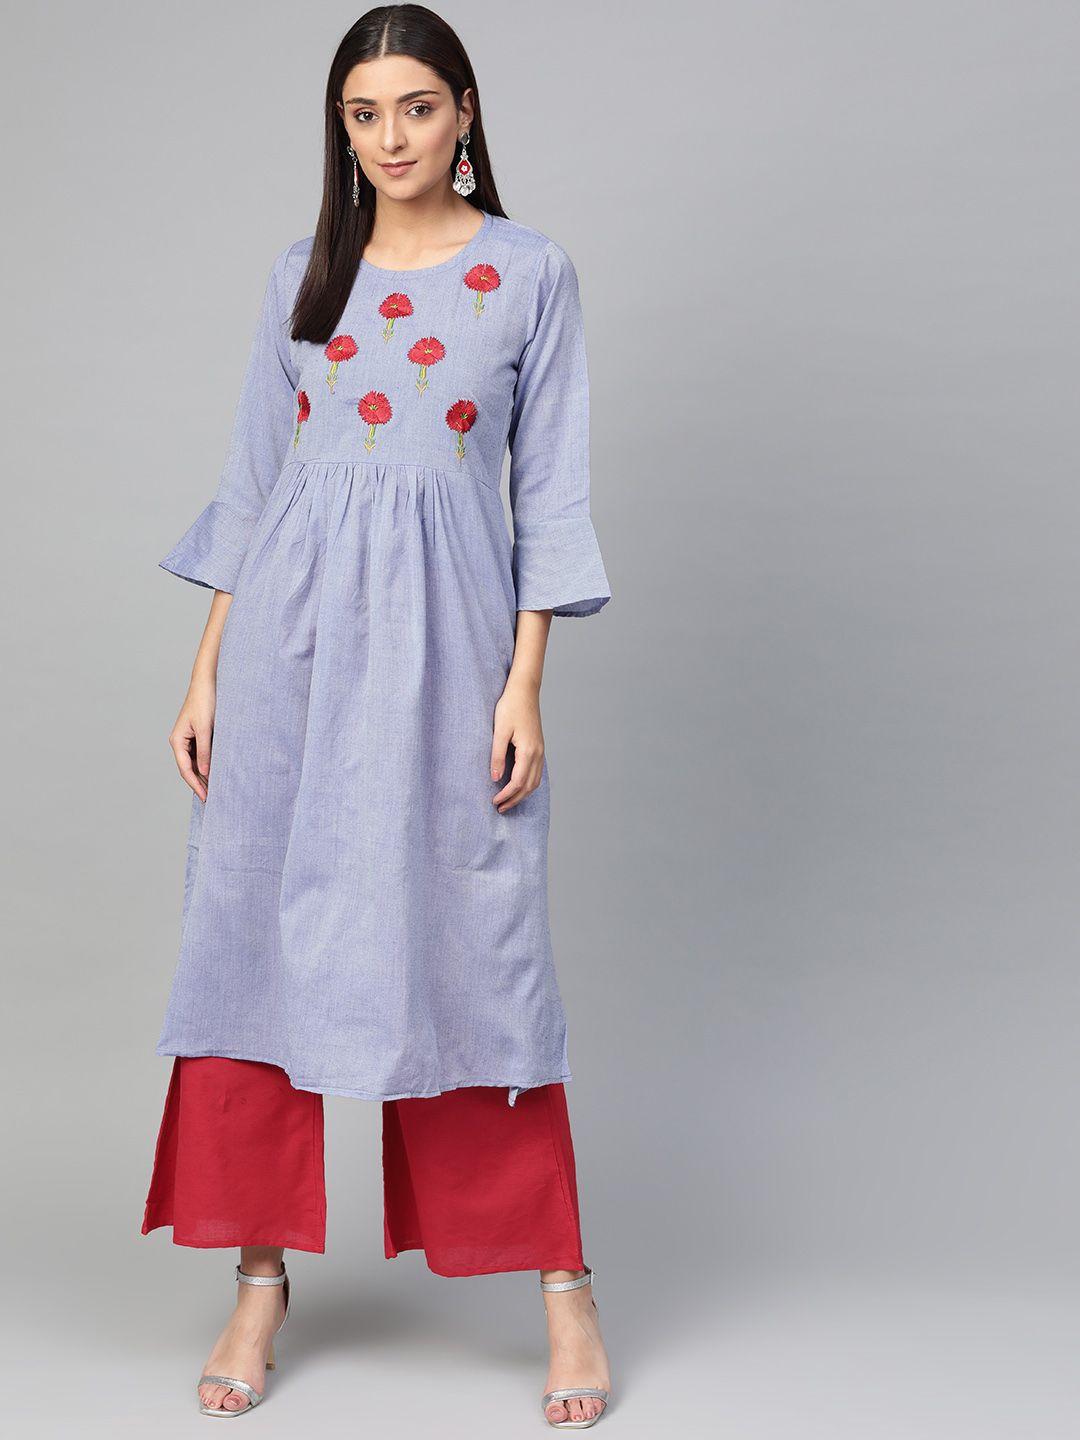 bhama couture women blue & red yoke design chambray kurta with palazzos